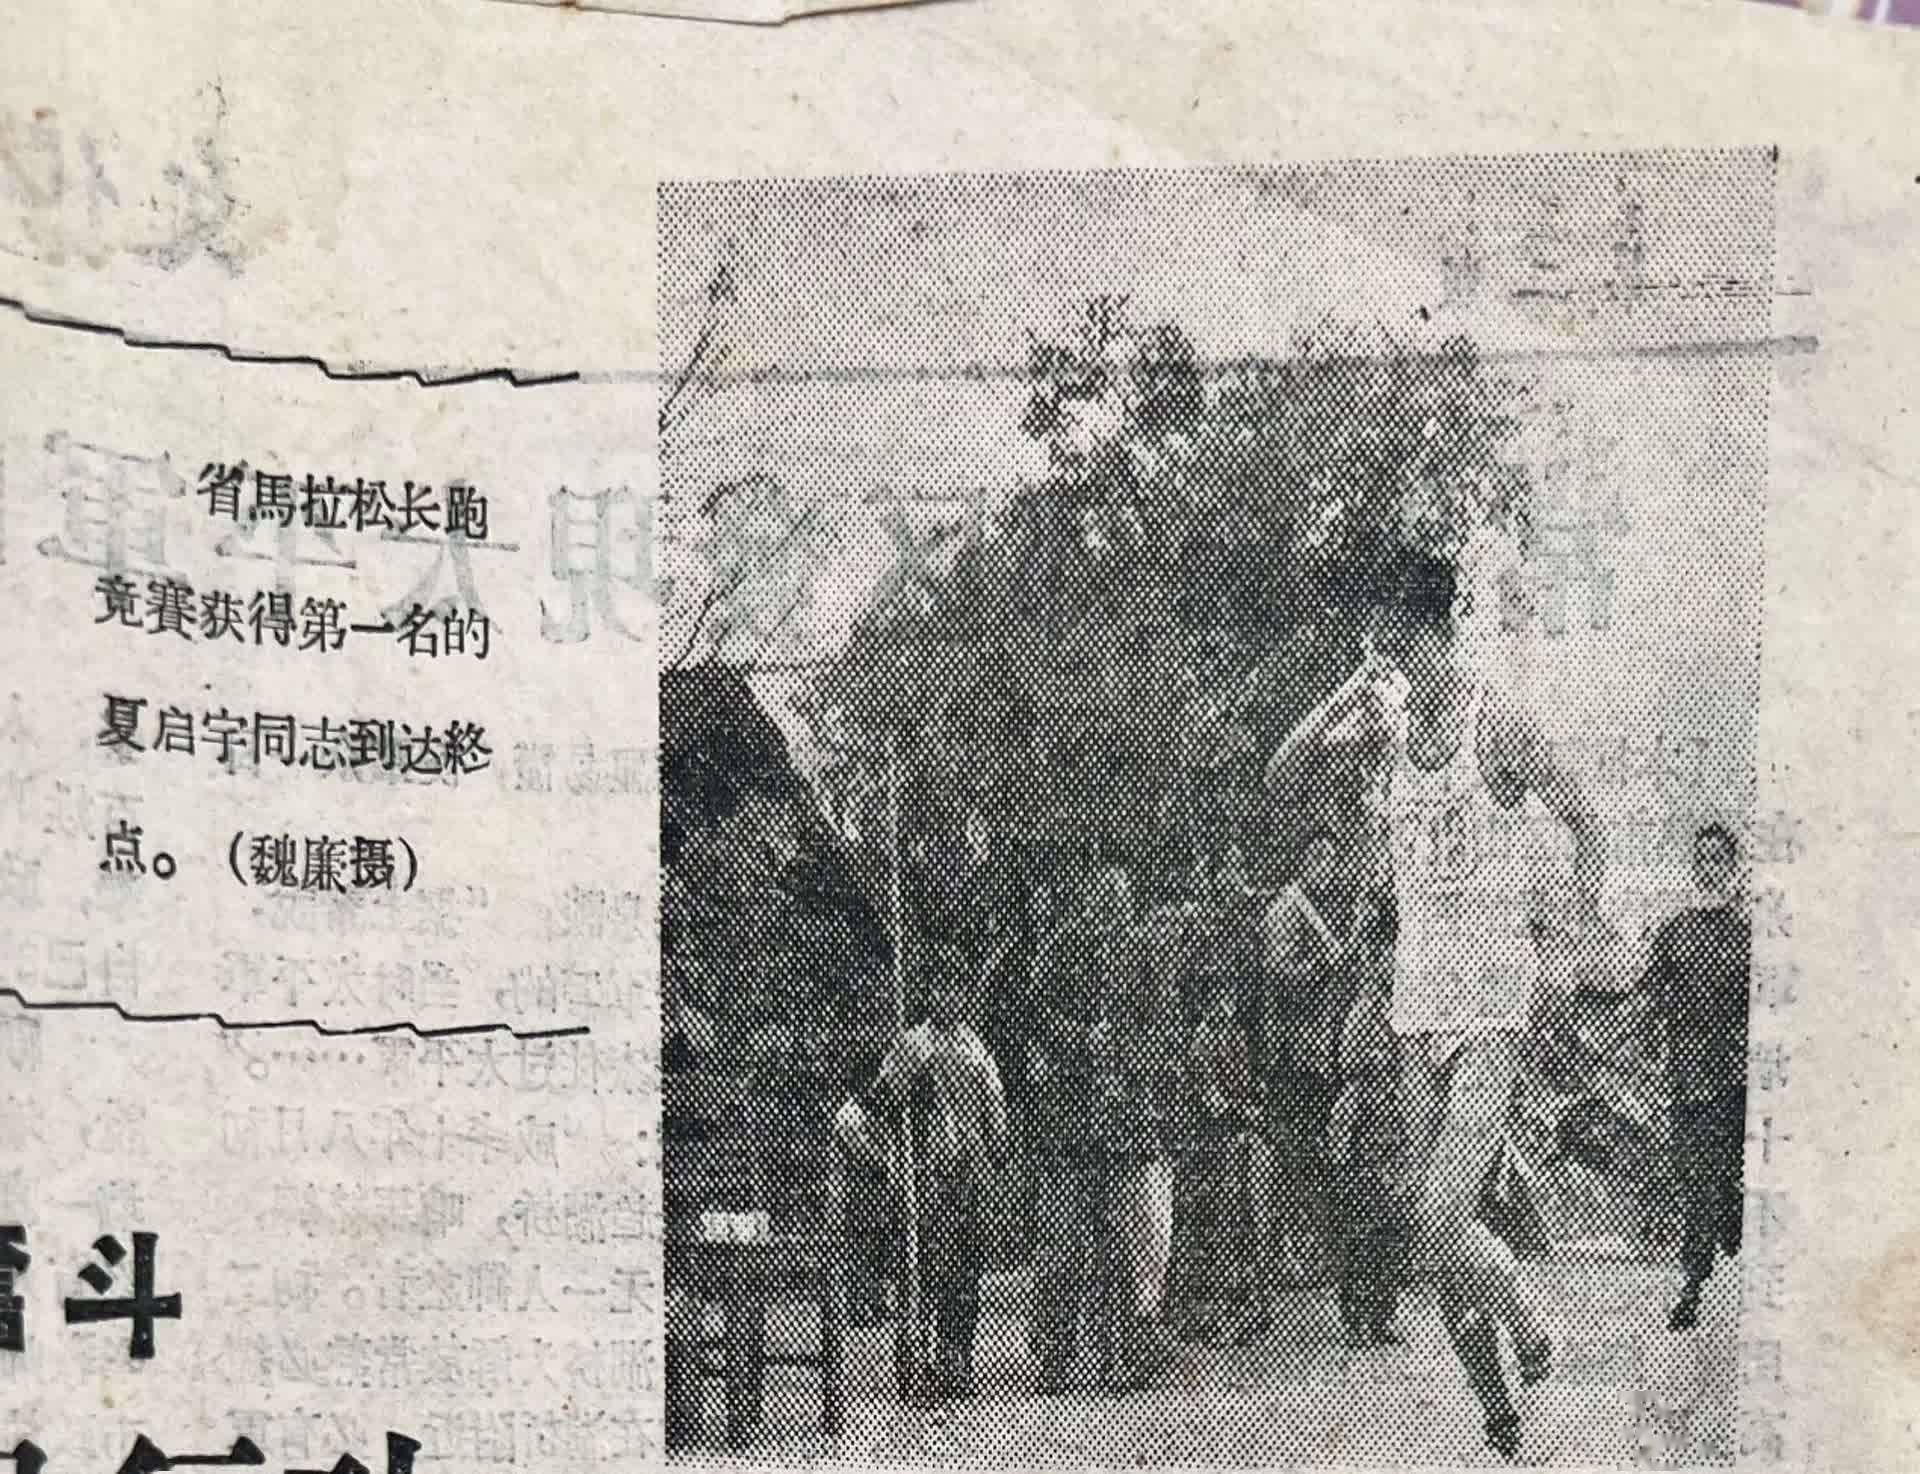 跨越66年 新中国首场马拉松比赛的故事还在延续,马拉松比赛